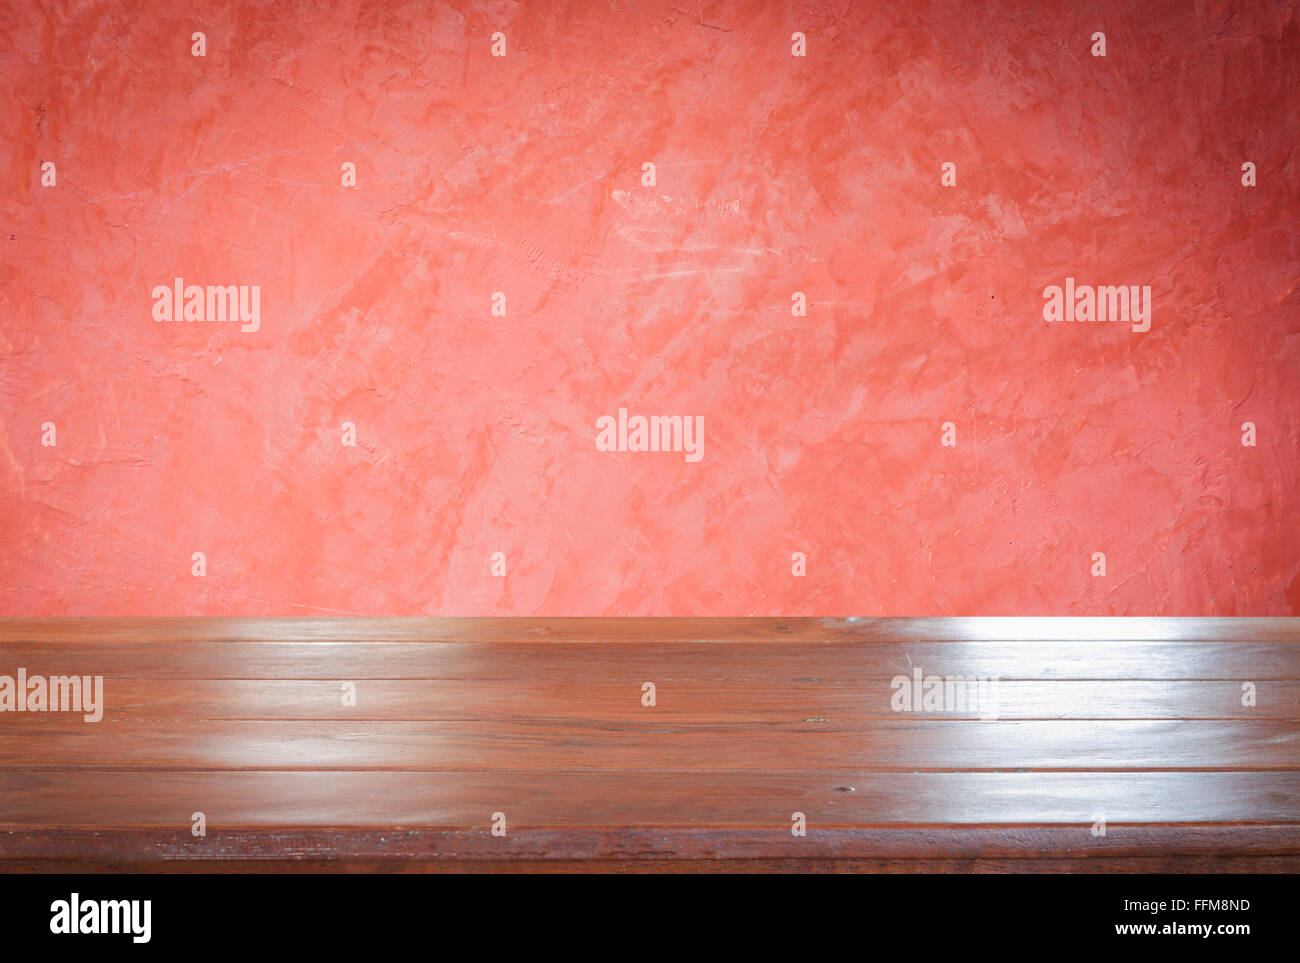 Ancienne table en bois vide haut avec red wall background, stock photo Banque D'Images